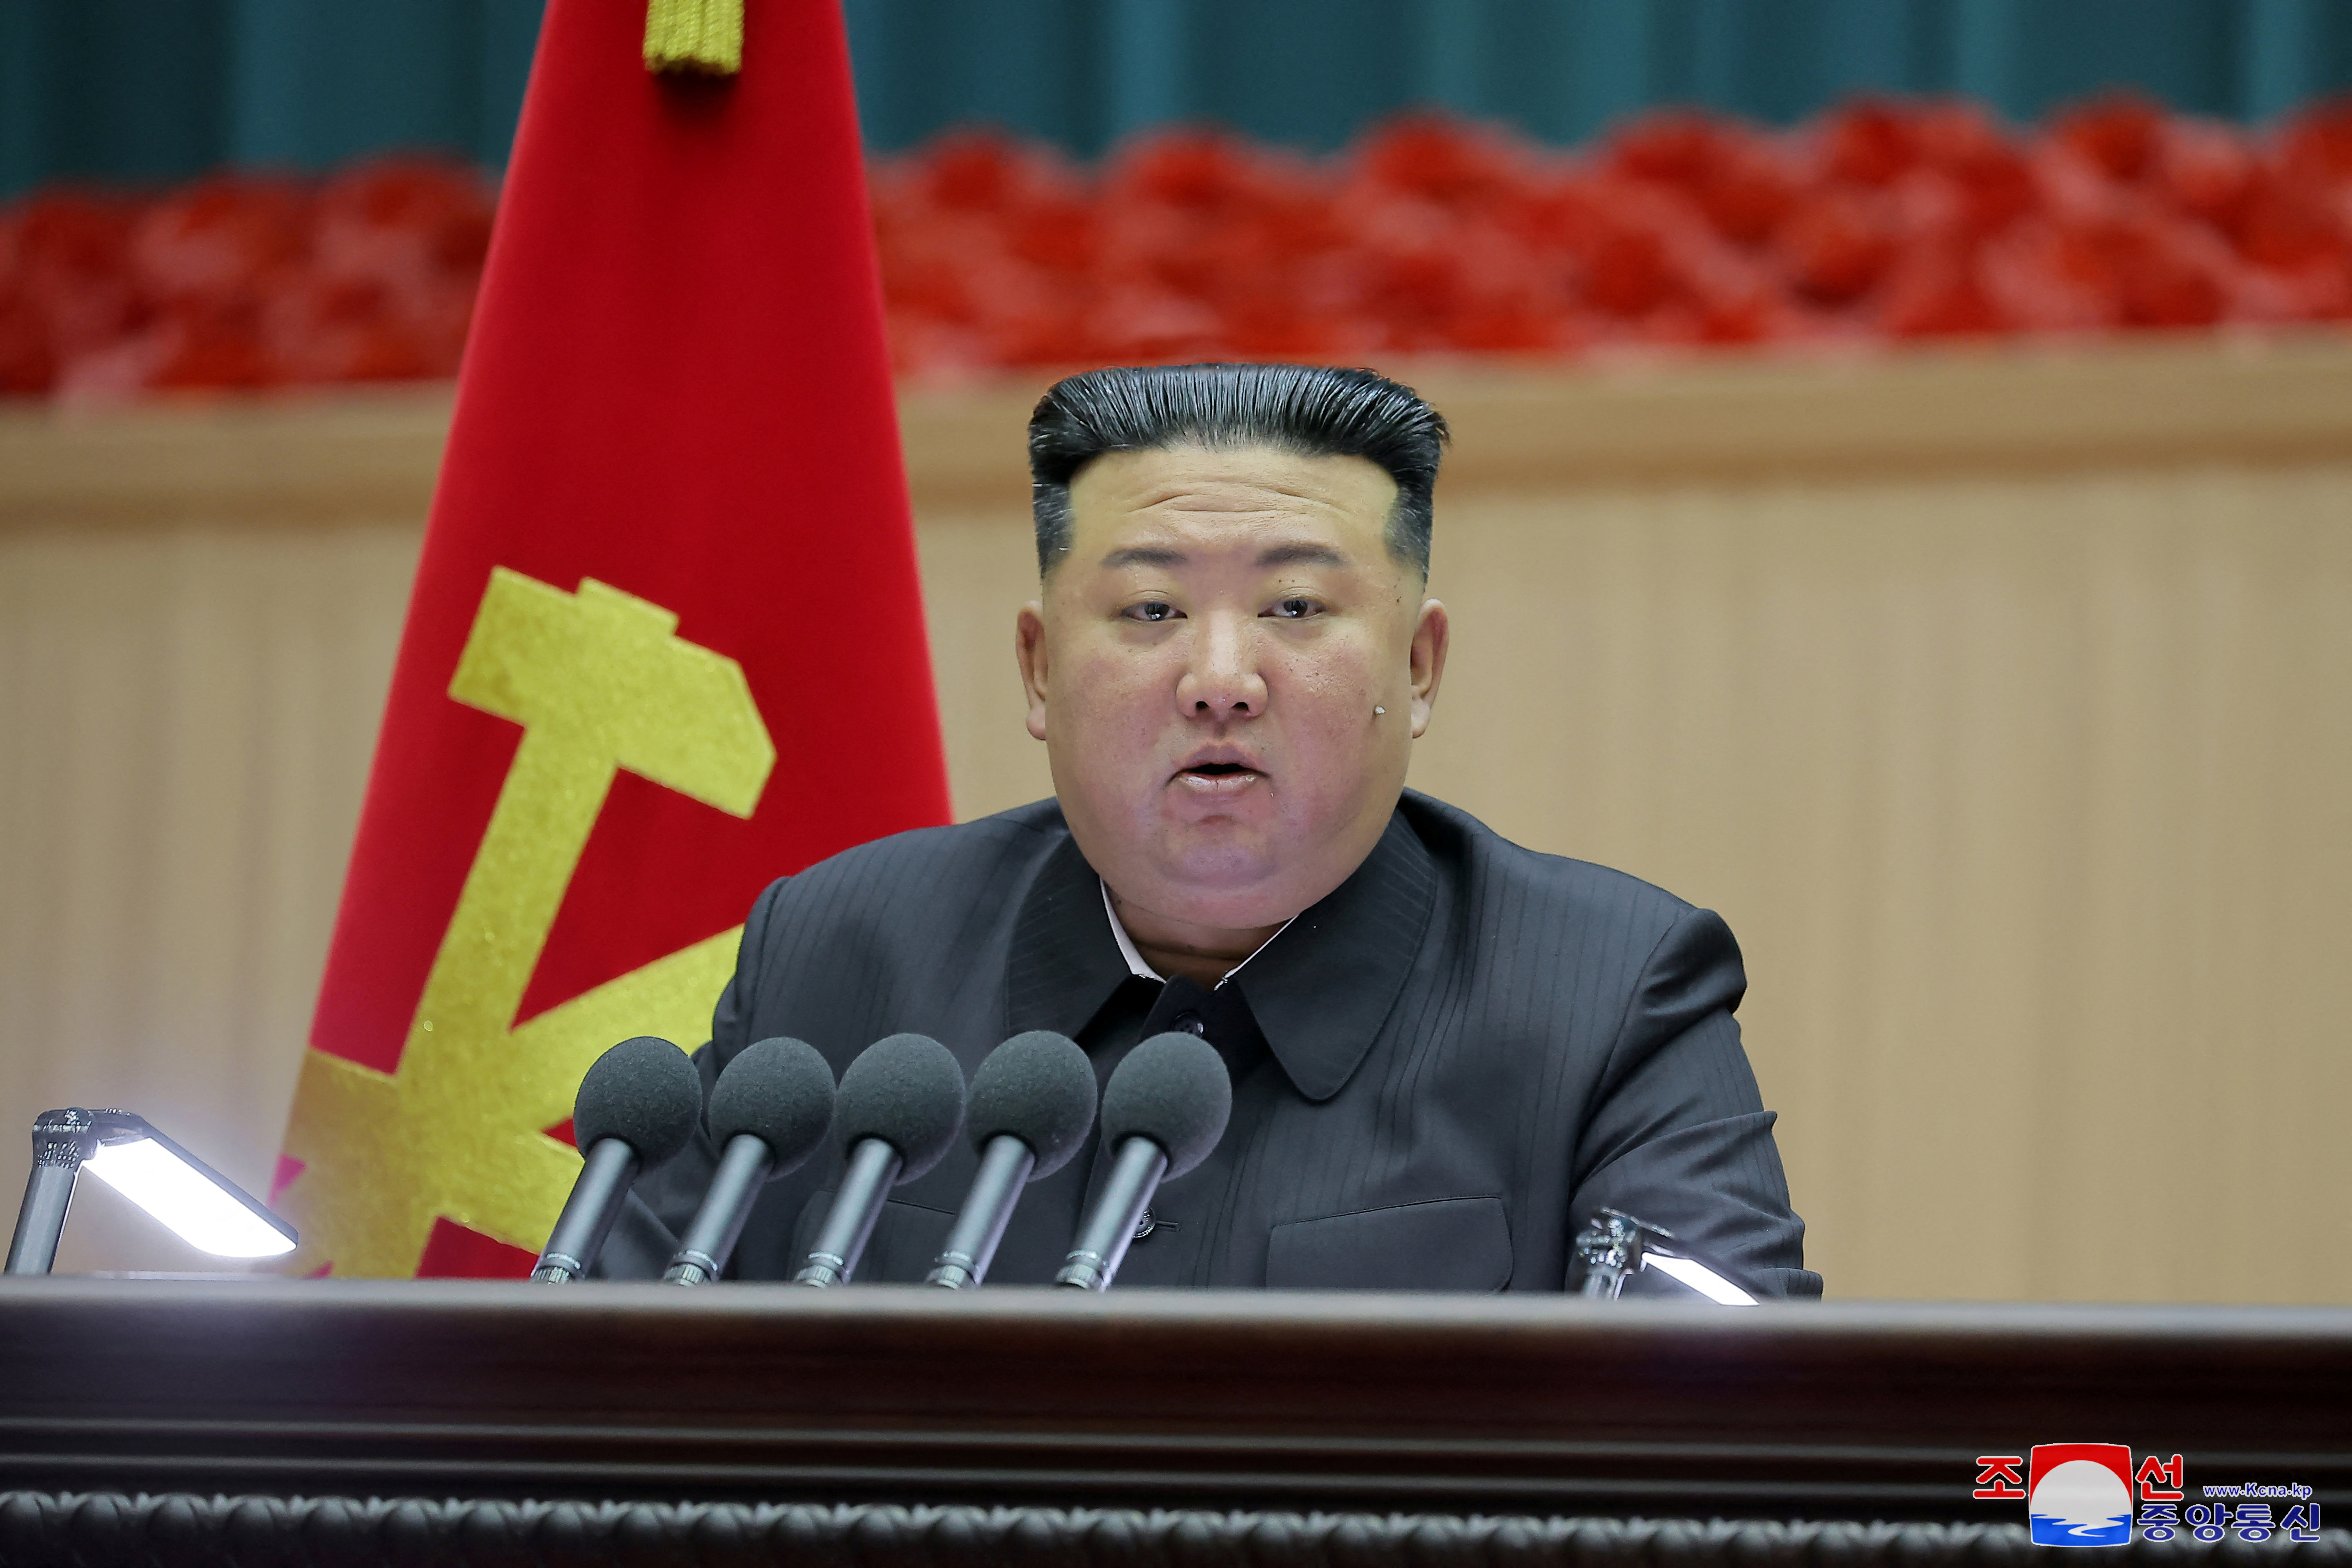 北朝鮮の金総書記、軍に戦争準備加速を指示＝ＫＣＮＡ - ロイター (Reuters Japan)